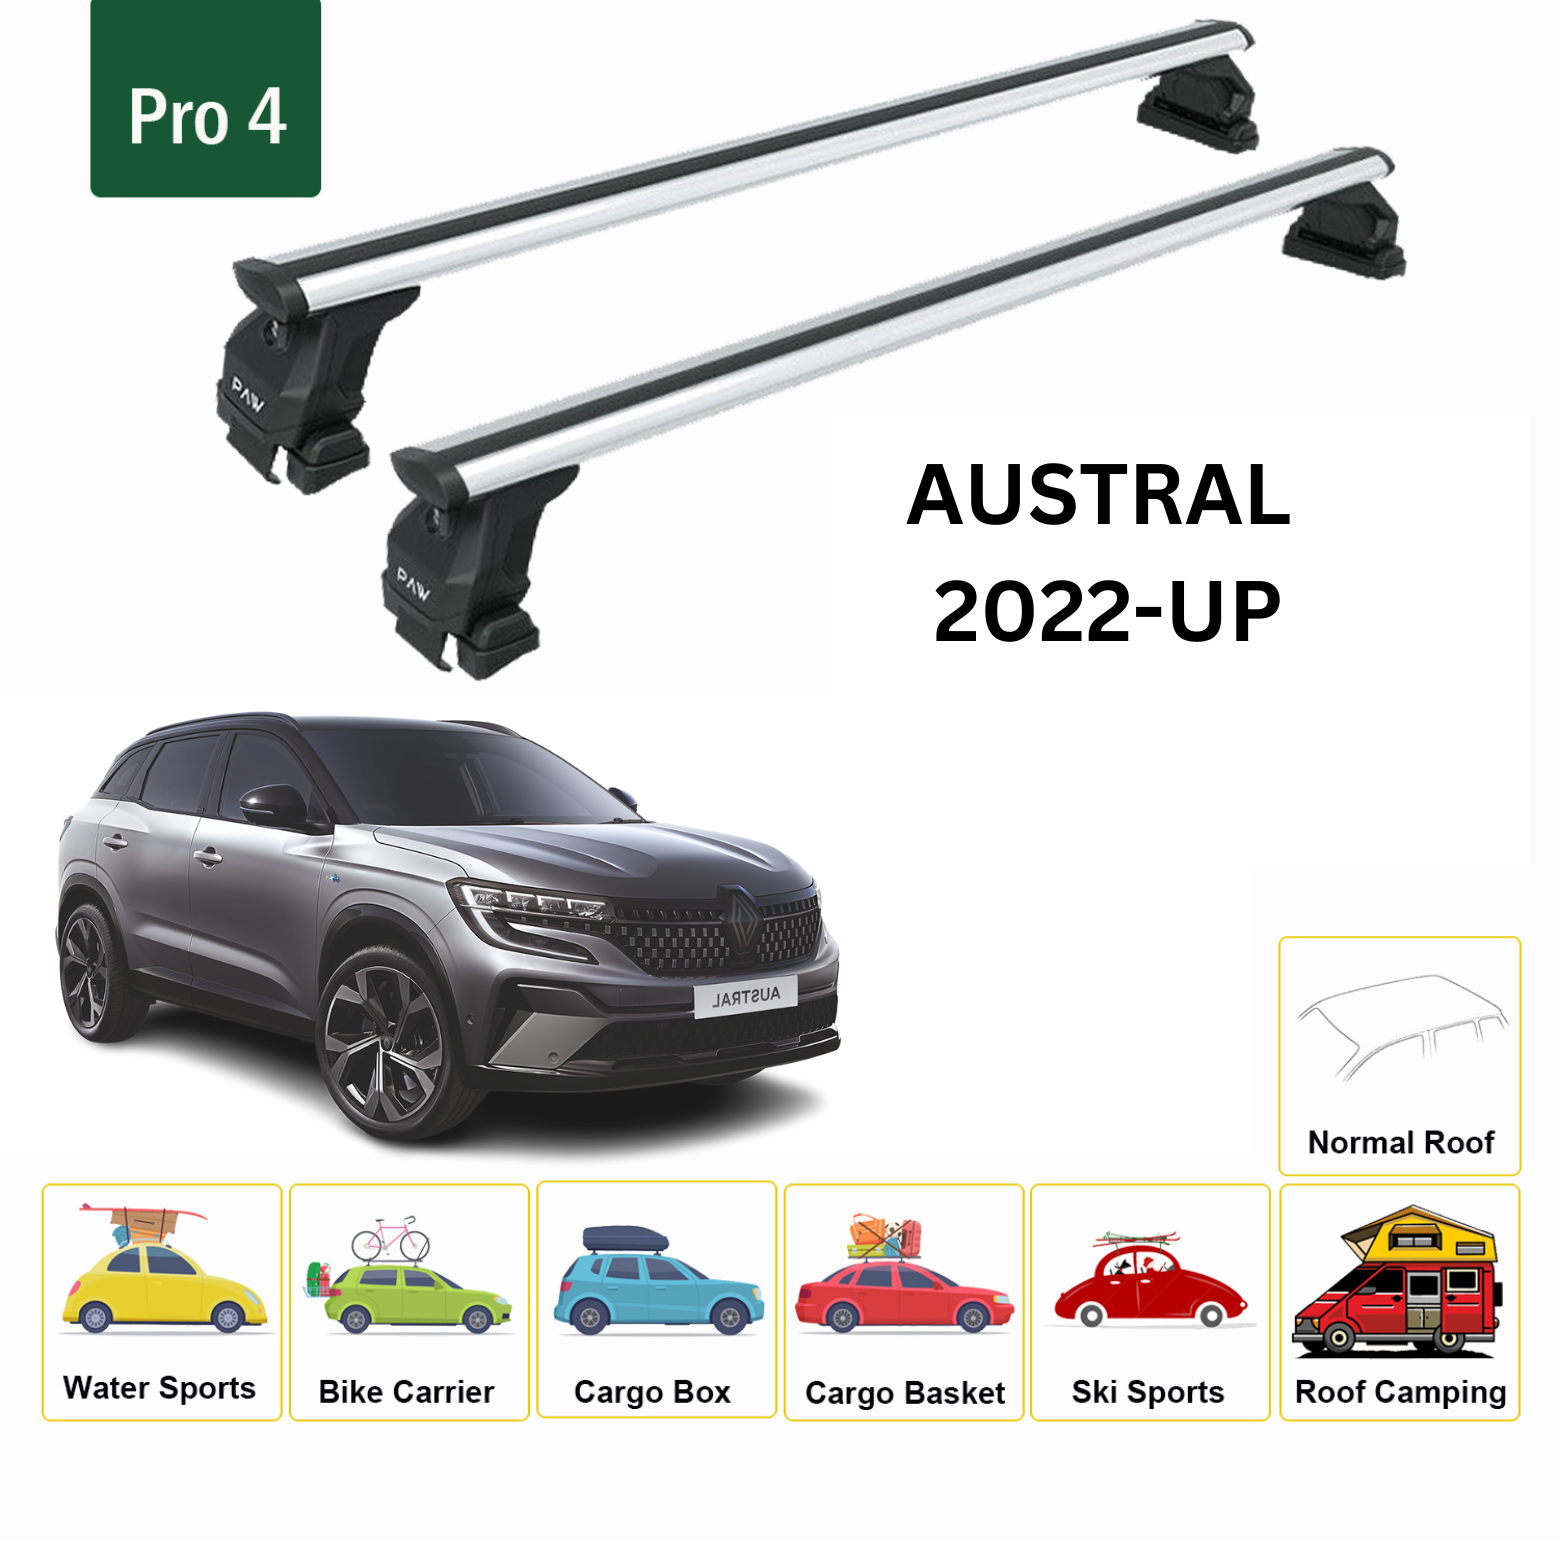 Für Renault Austral 2022-Up Dachträgersystem, Aluminium-Querstange, Metallhalterung, normales Dach, Silber